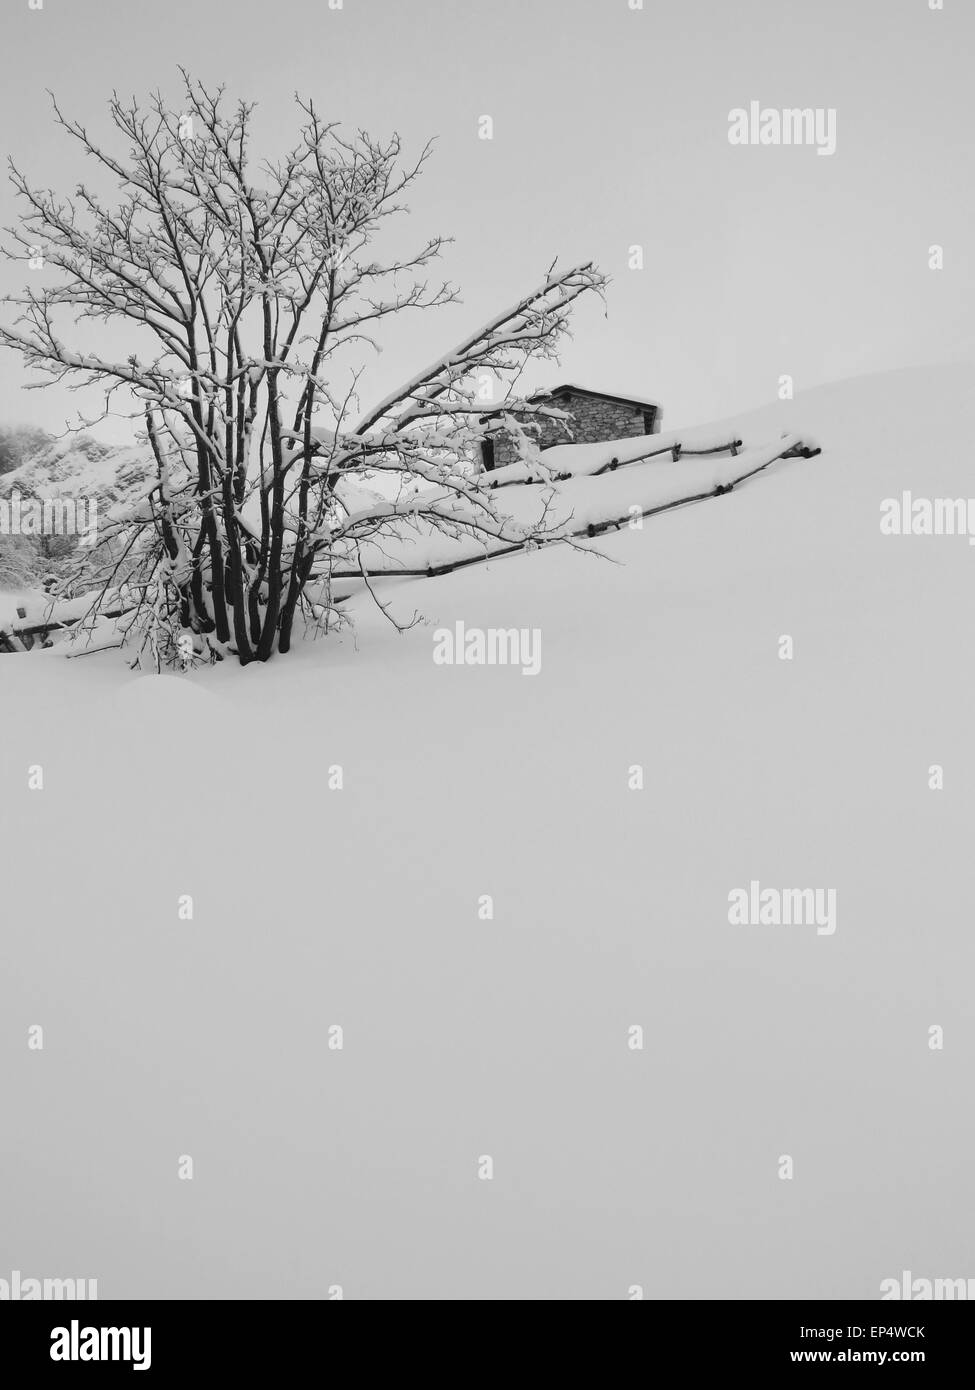 Une vue de la neige fraîche sur une montagne Banque D'Images